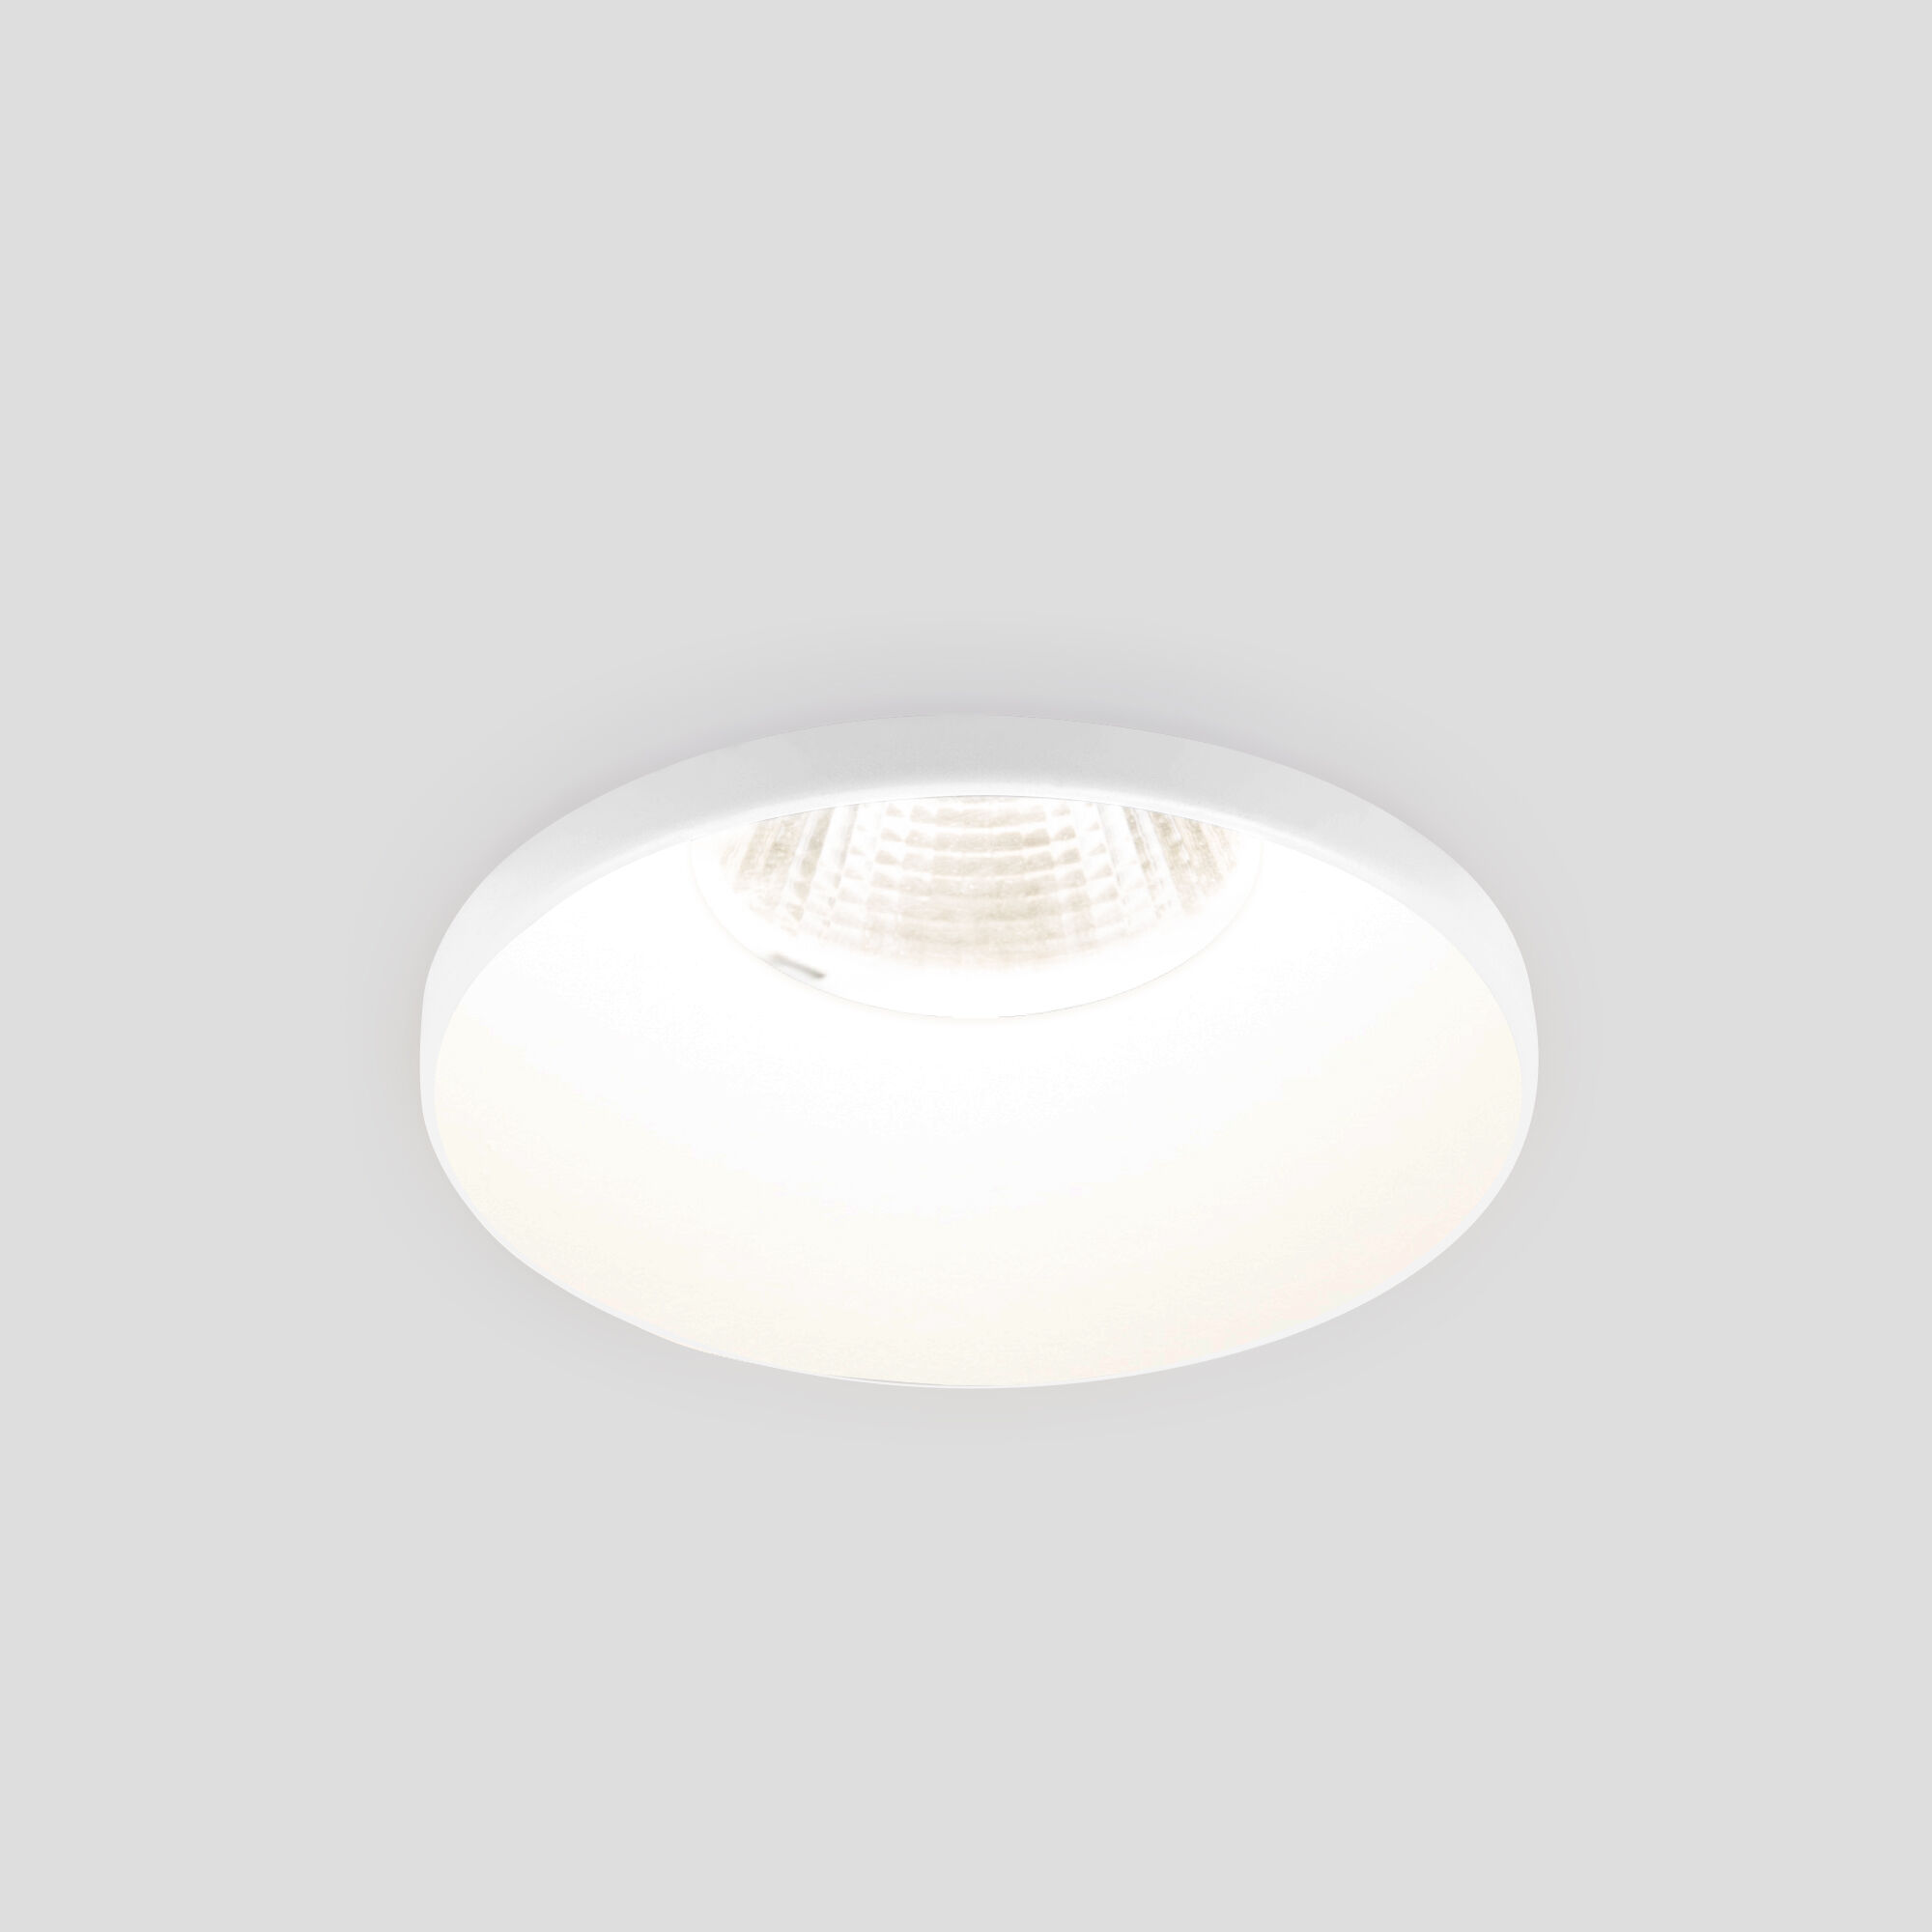 Встраиваемый точечный светодиодный светильник 25026/LED 7W 4200K WH белый Elektrostandard